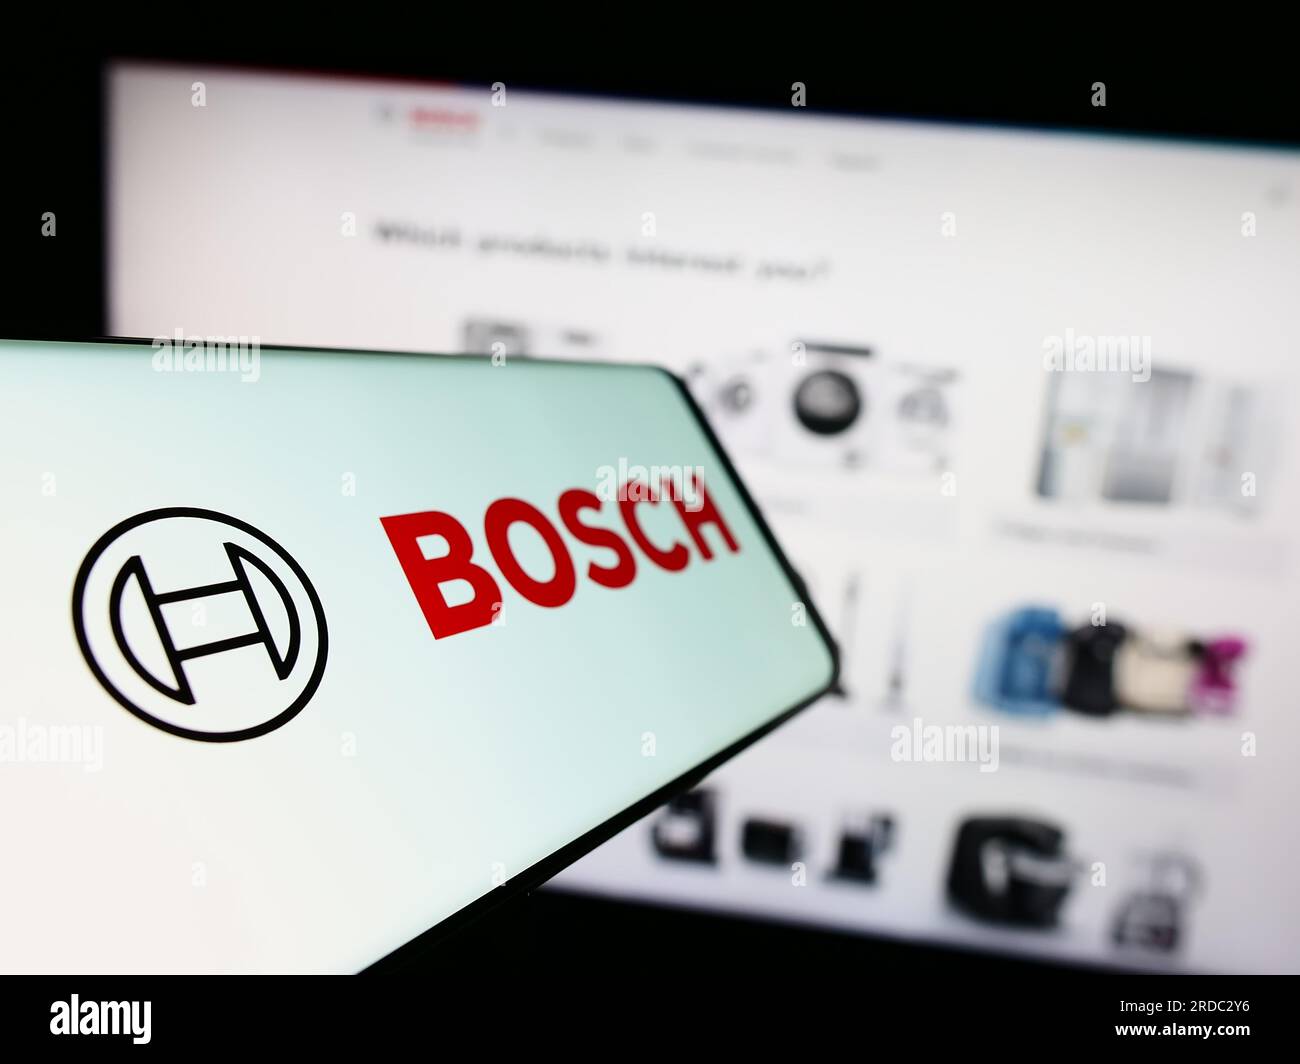 Teléfono móvil con el logotipo de la empresa de ingeniería alemana Robert Bosch GmbH en la pantalla delante del sitio web. Enfoque en el centro izquierdo de la pantalla del teléfono. Foto de stock